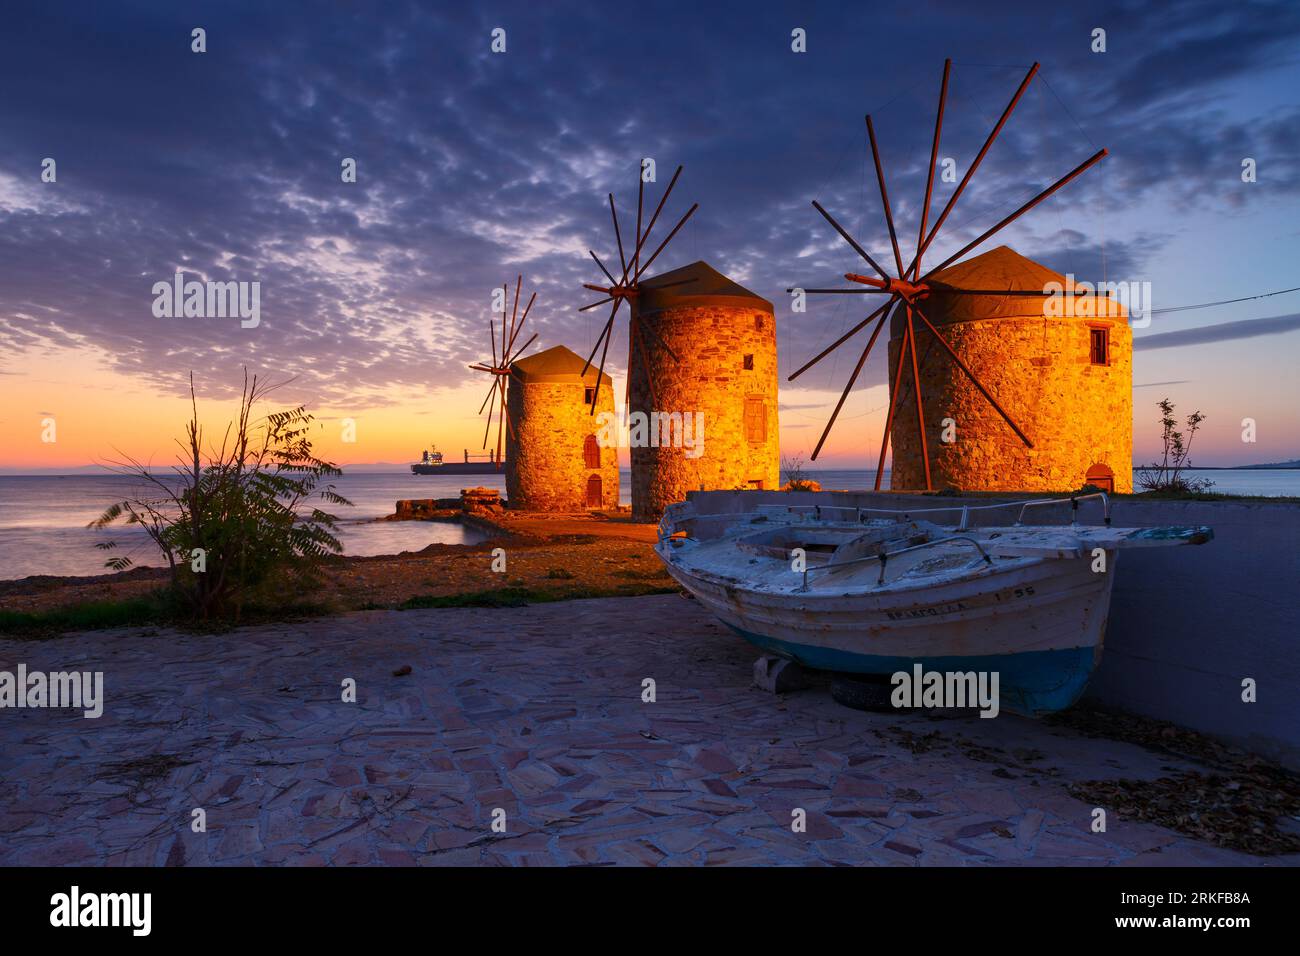 Image de l'heure bleue des célèbres moulins à vent de la ville de Chios. Banque D'Images